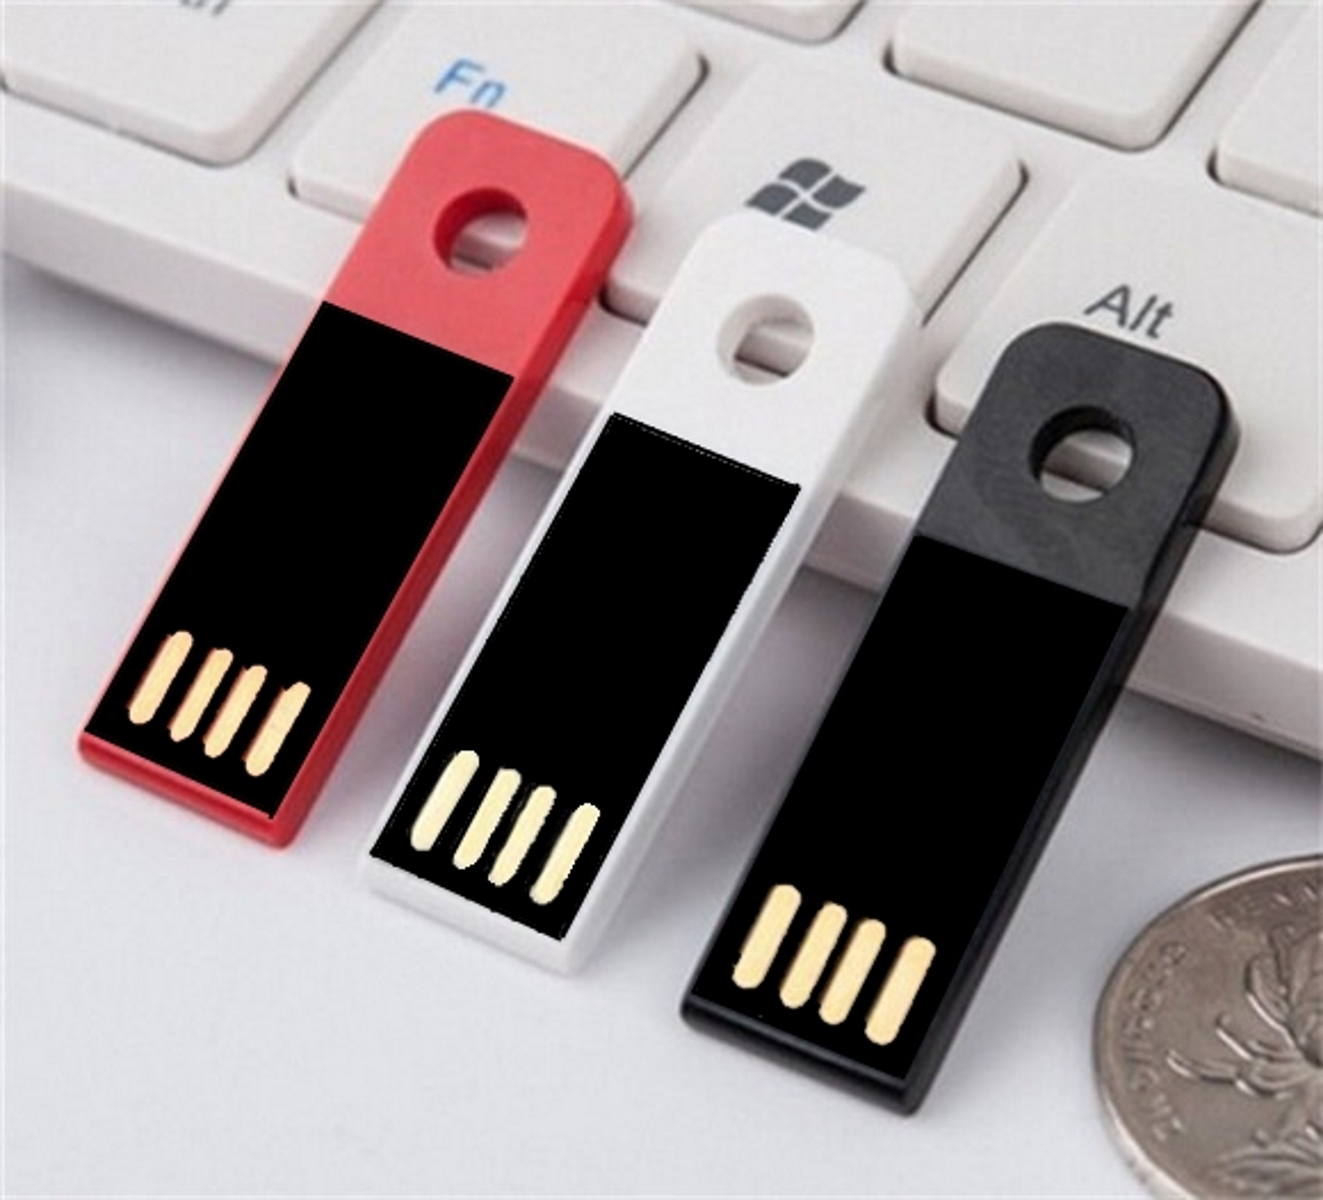 Mini 64 (Schwarz, USB-Stick GB) ® USB GERMANY Slim